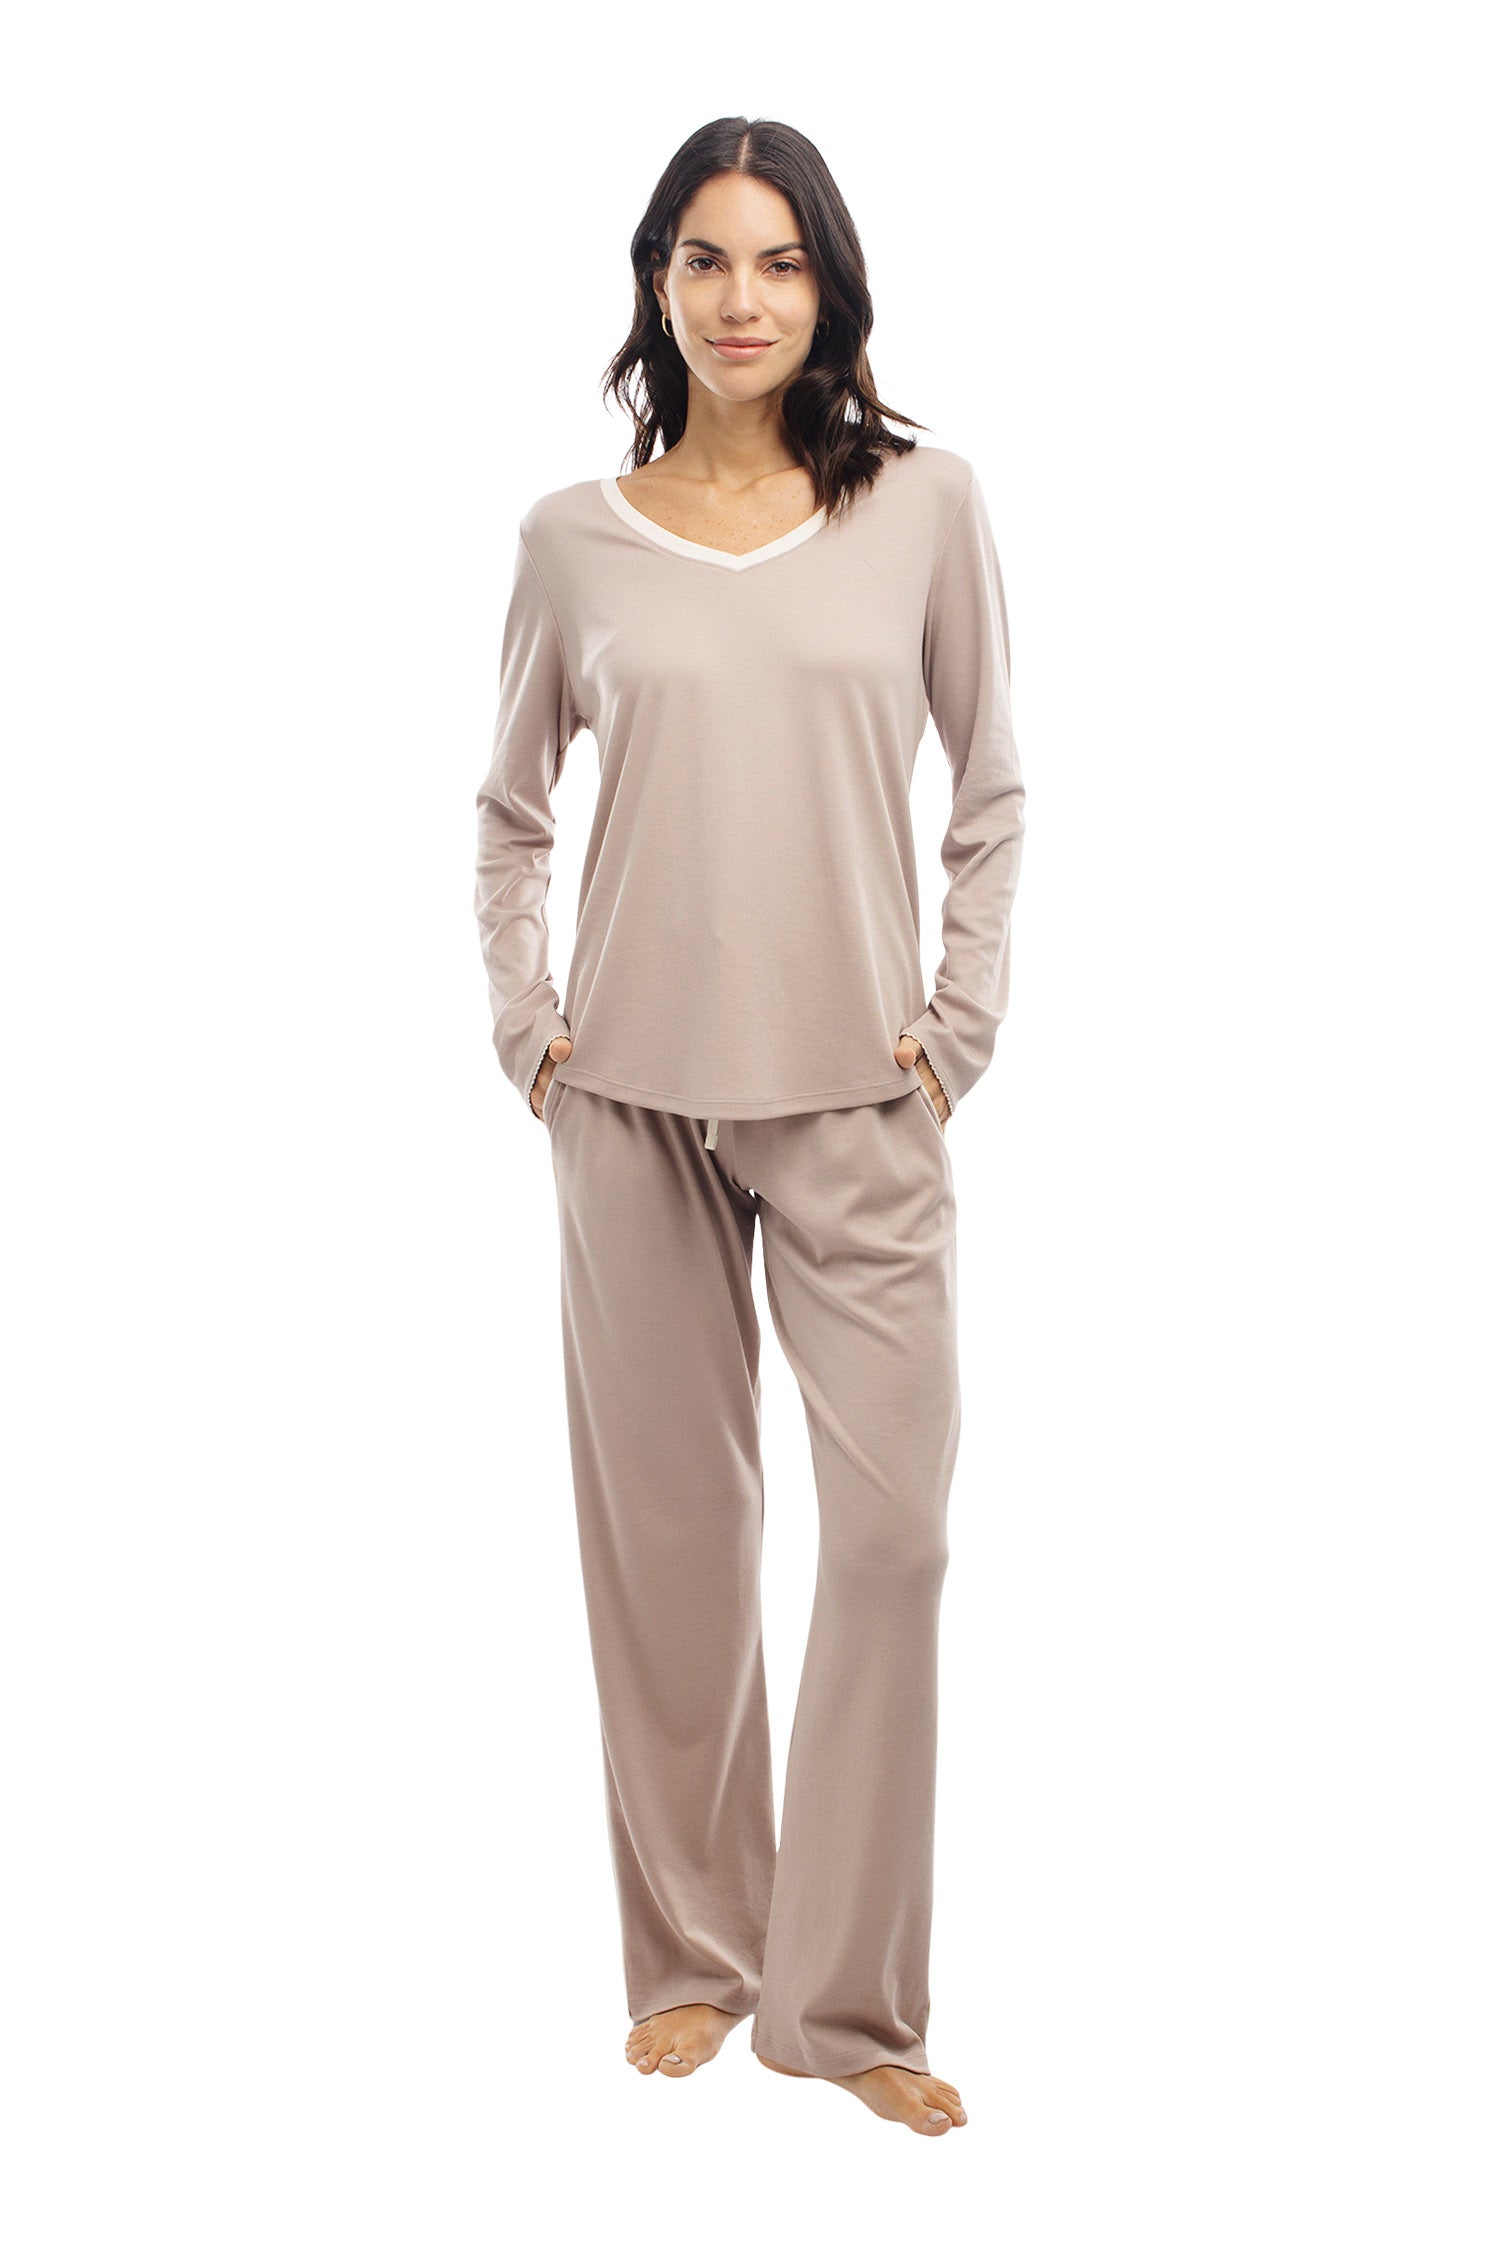 Shop Soft & Cozy Tall Pajamas For Women & Men